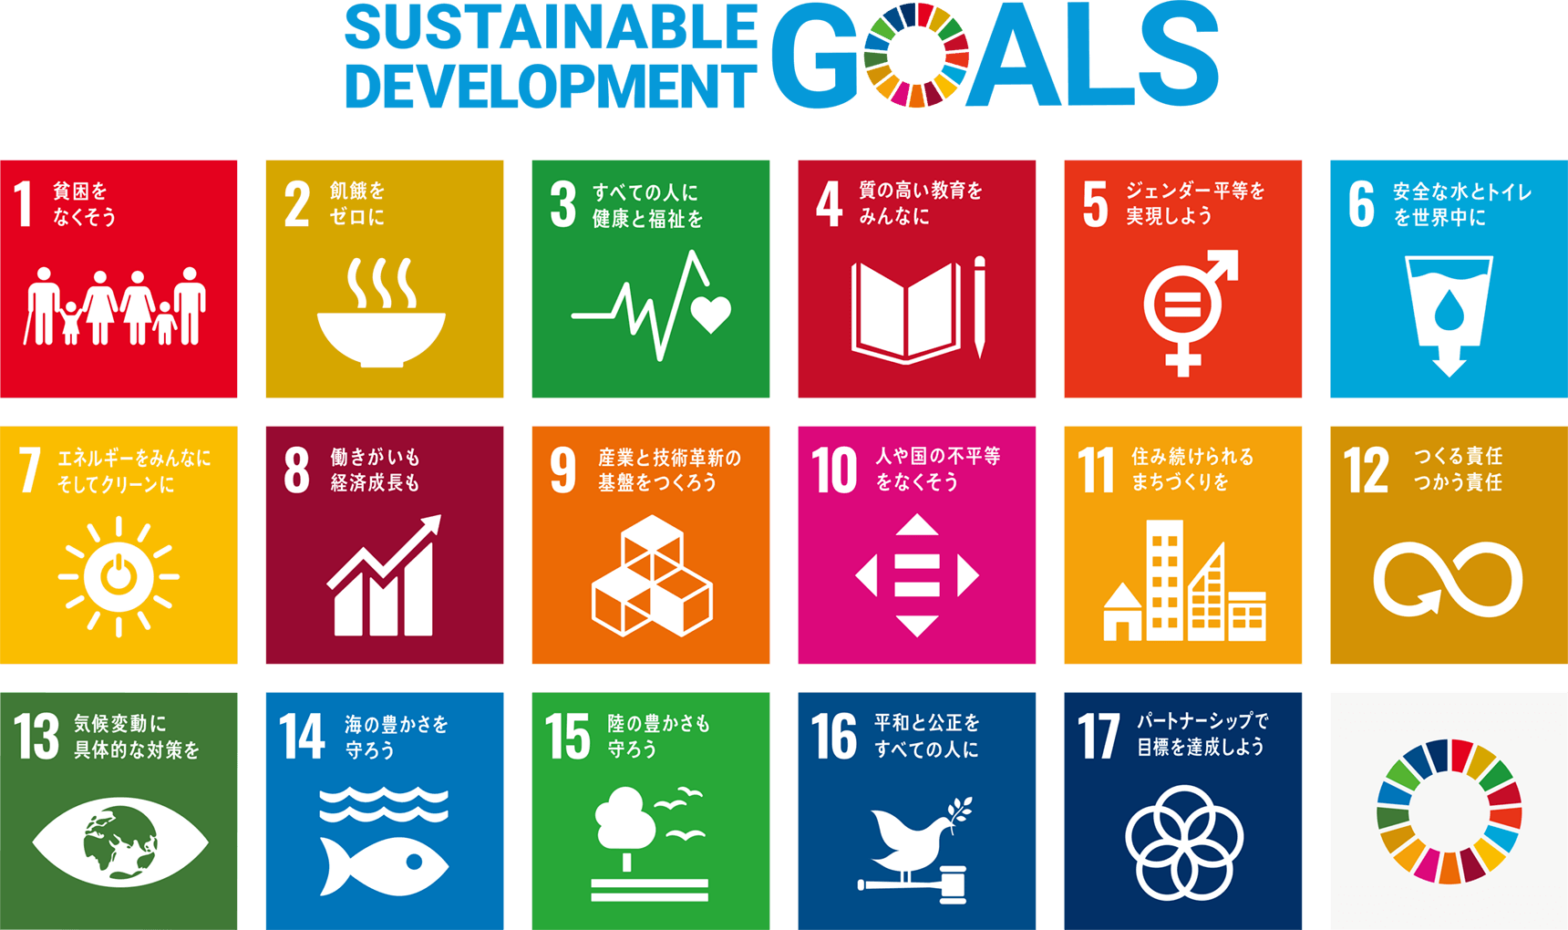 Sustainability steps / SDGs (Sustainable Development Goals) Sustainability Initiatives of Shizukuishi Prince Hotel